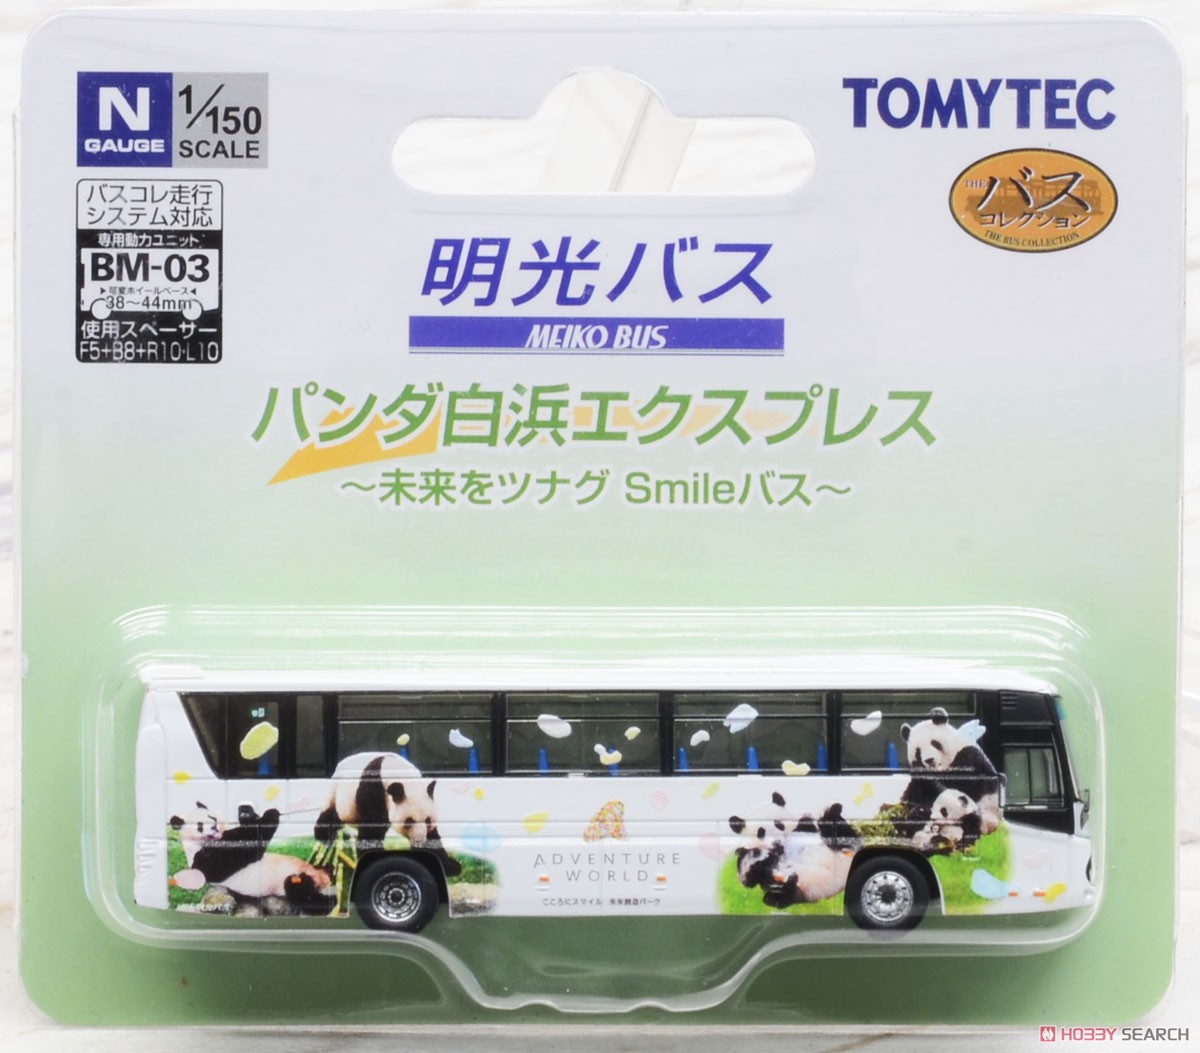 ザ・バスコレクション 明光バス パンダ白浜エクスプレス 未来をツナグSmileバス (鉄道模型) パッケージ1